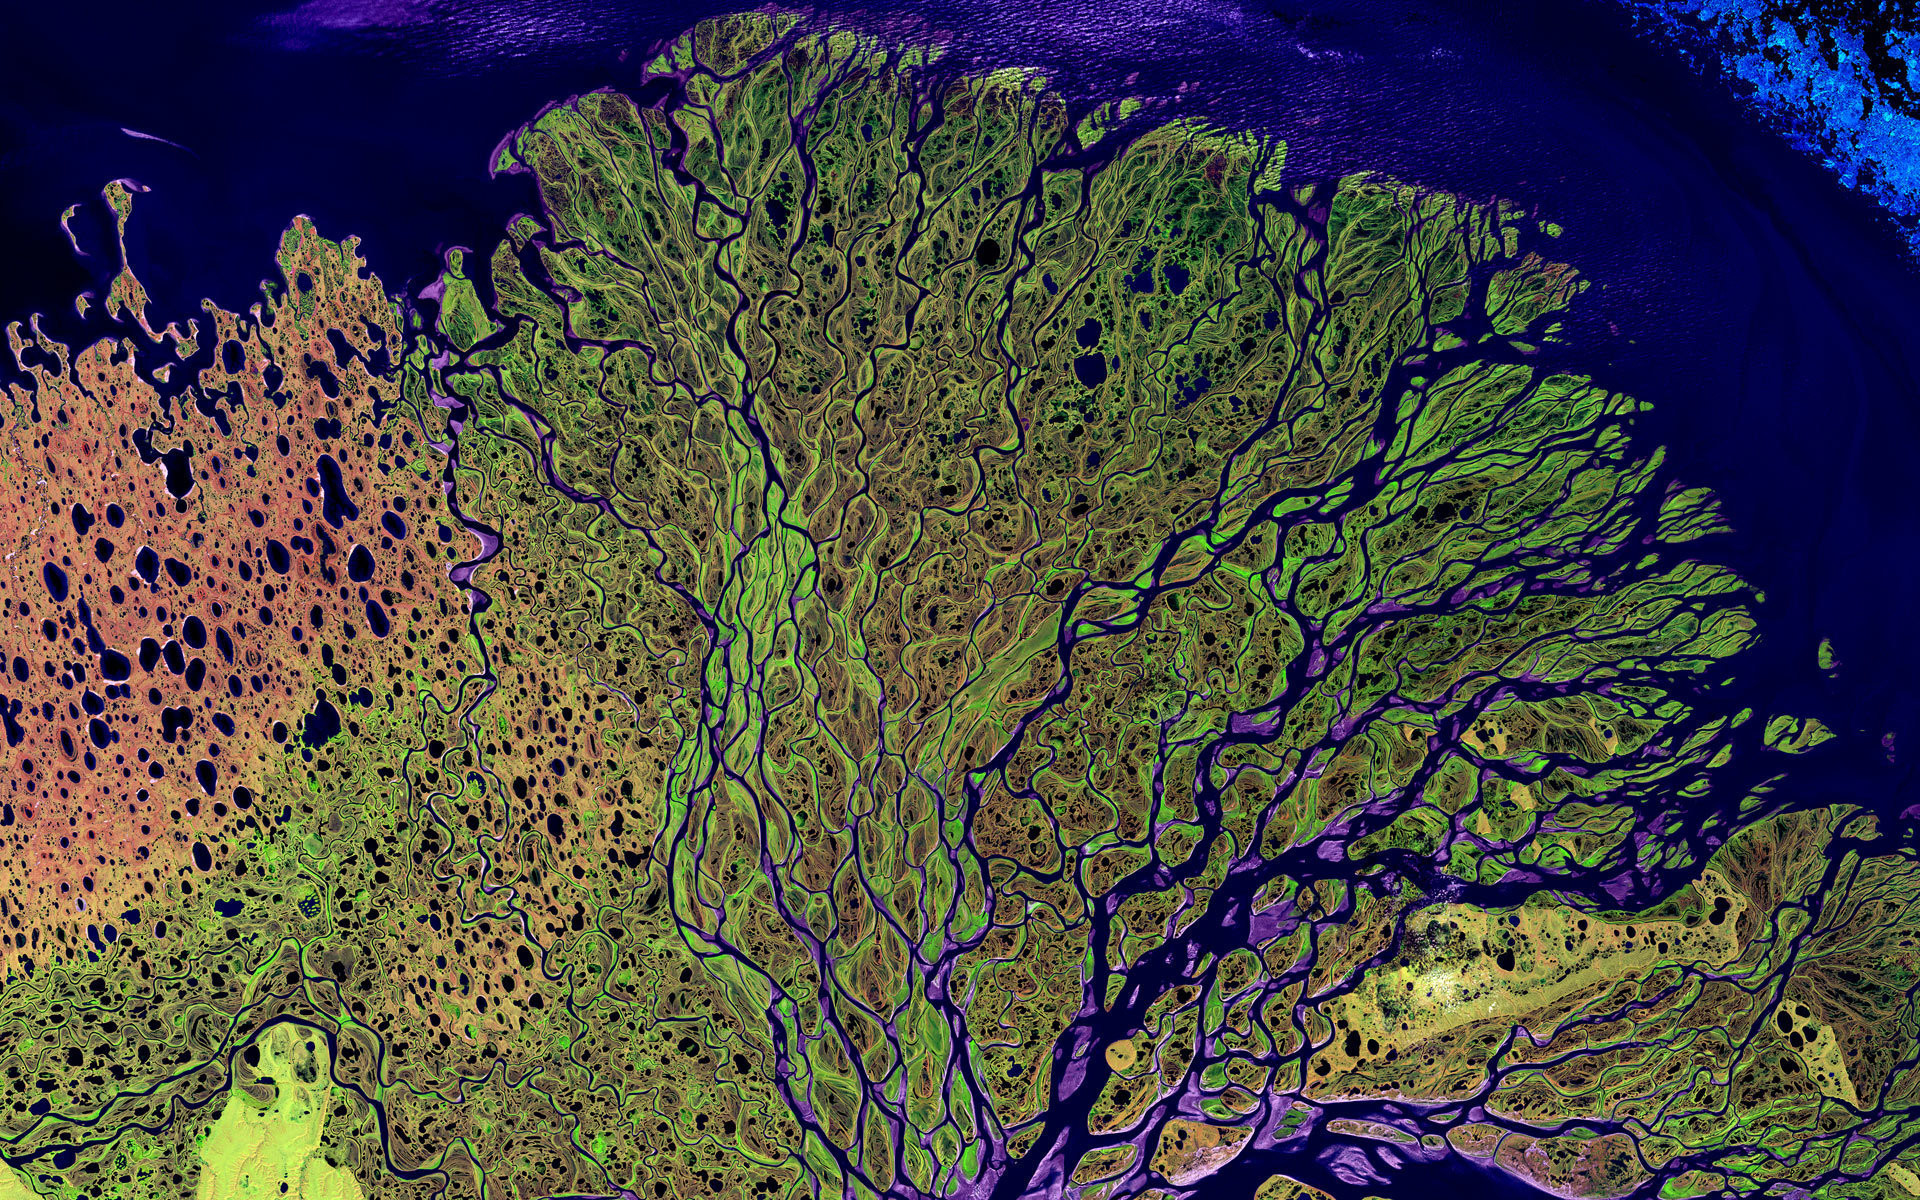 Река Лена в России, одна из крупнейших речных систем в мире. Также это важная среда обитания для многих видов флоры и фауны Сибири.